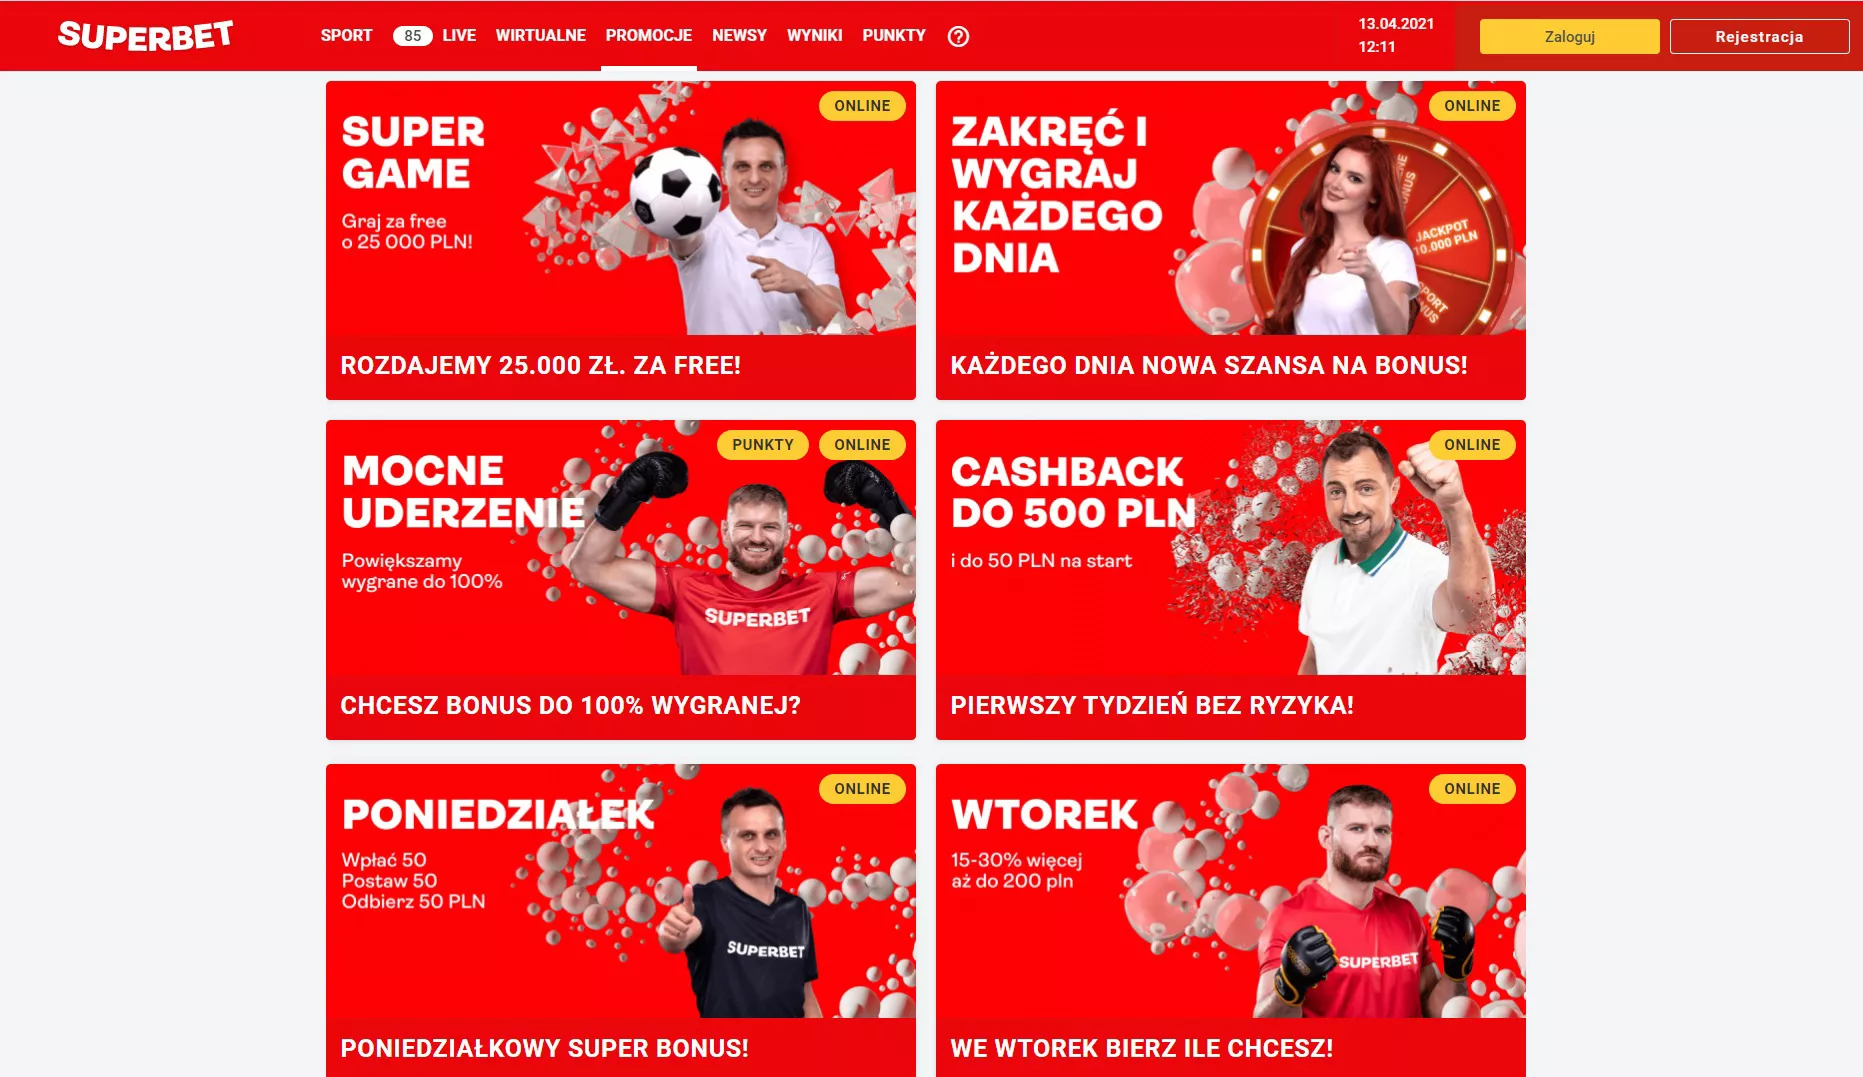 Promocje Superbet Zakłady Bukmacherskie - screen ze strony internetwej